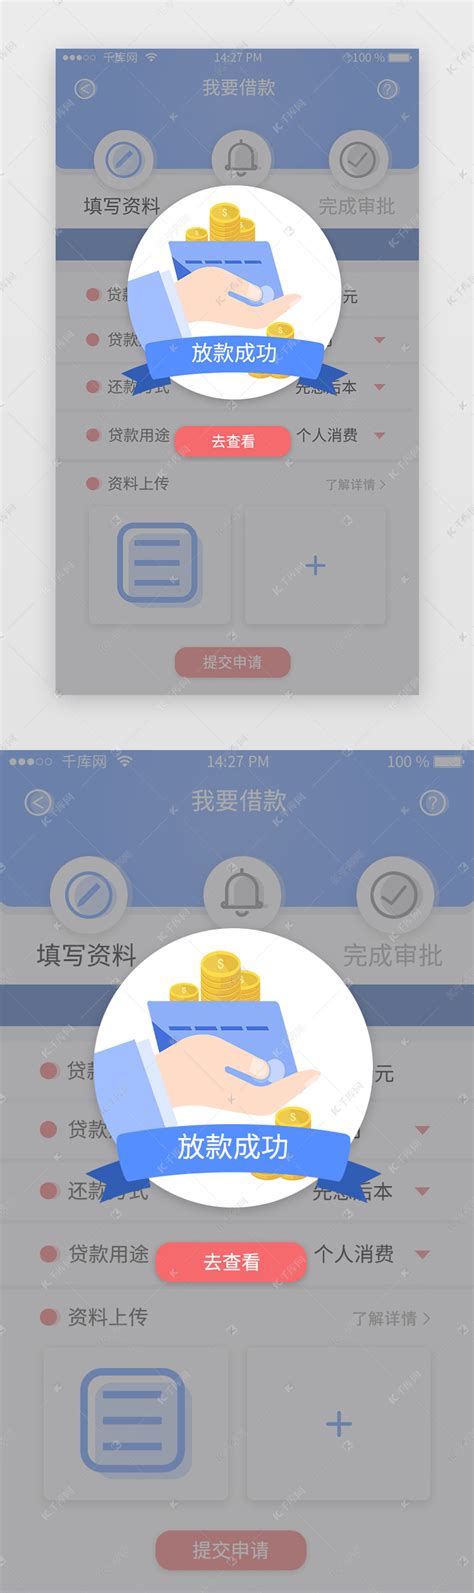 贷款app红蓝对比色调放款成功弹窗提示页ui界面设计素材-千库网